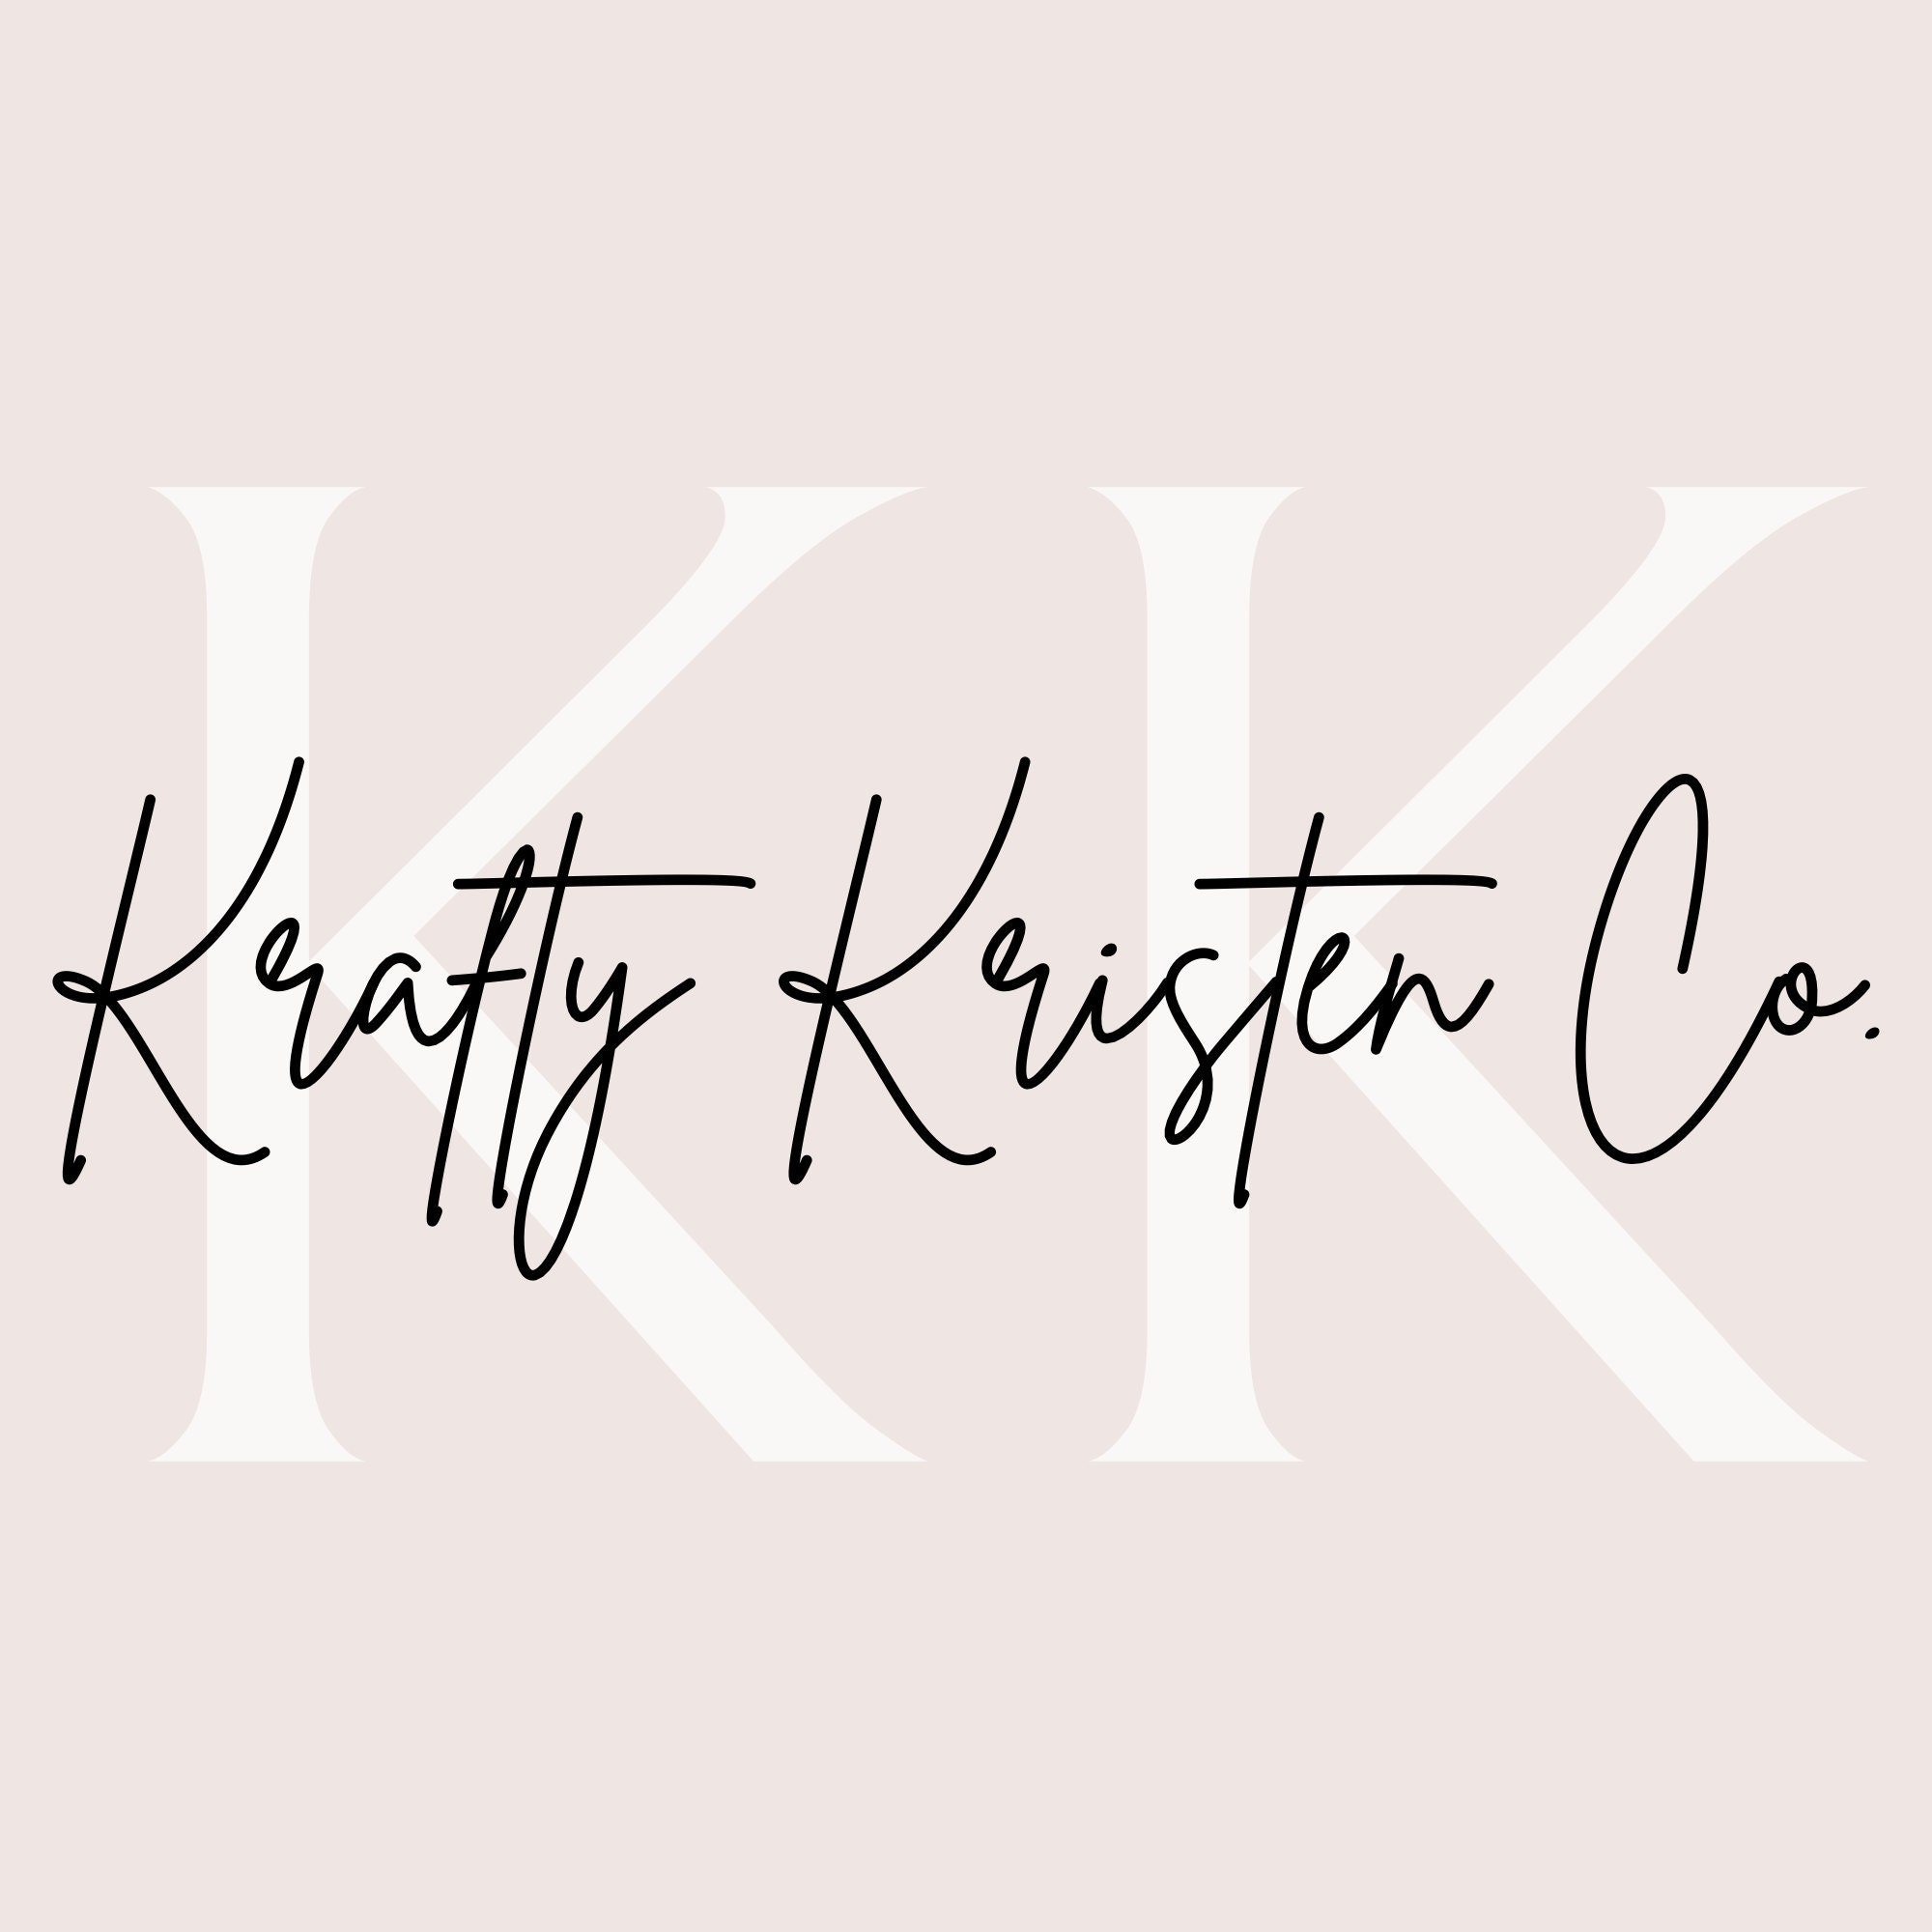 KraftyKristenCompany - Handmade Home Decor, Gifts, and MORE! - Etsy